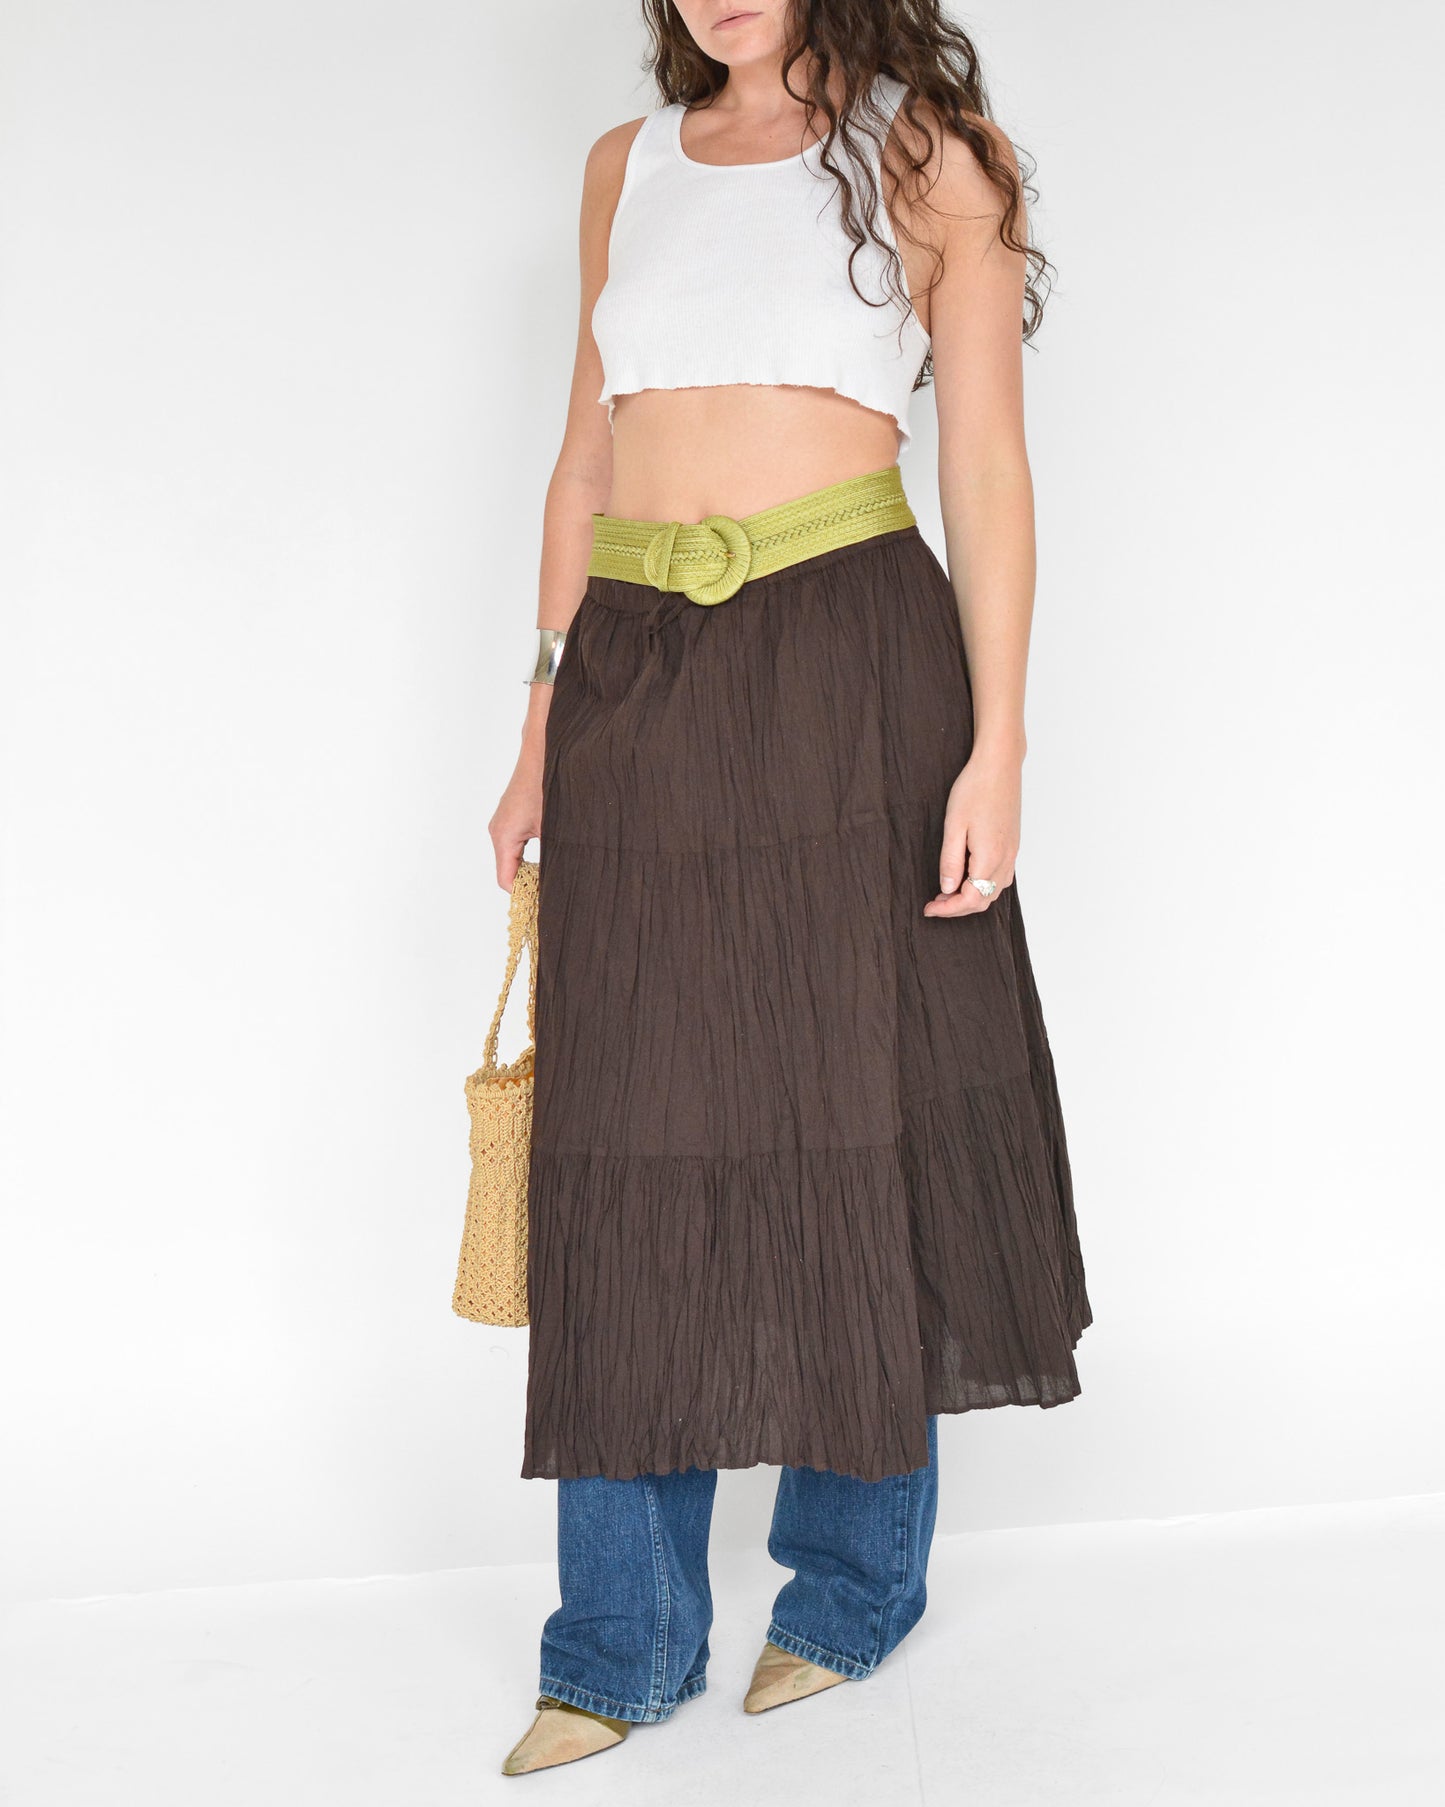 Vintage brown drawstring crinkle skirt.